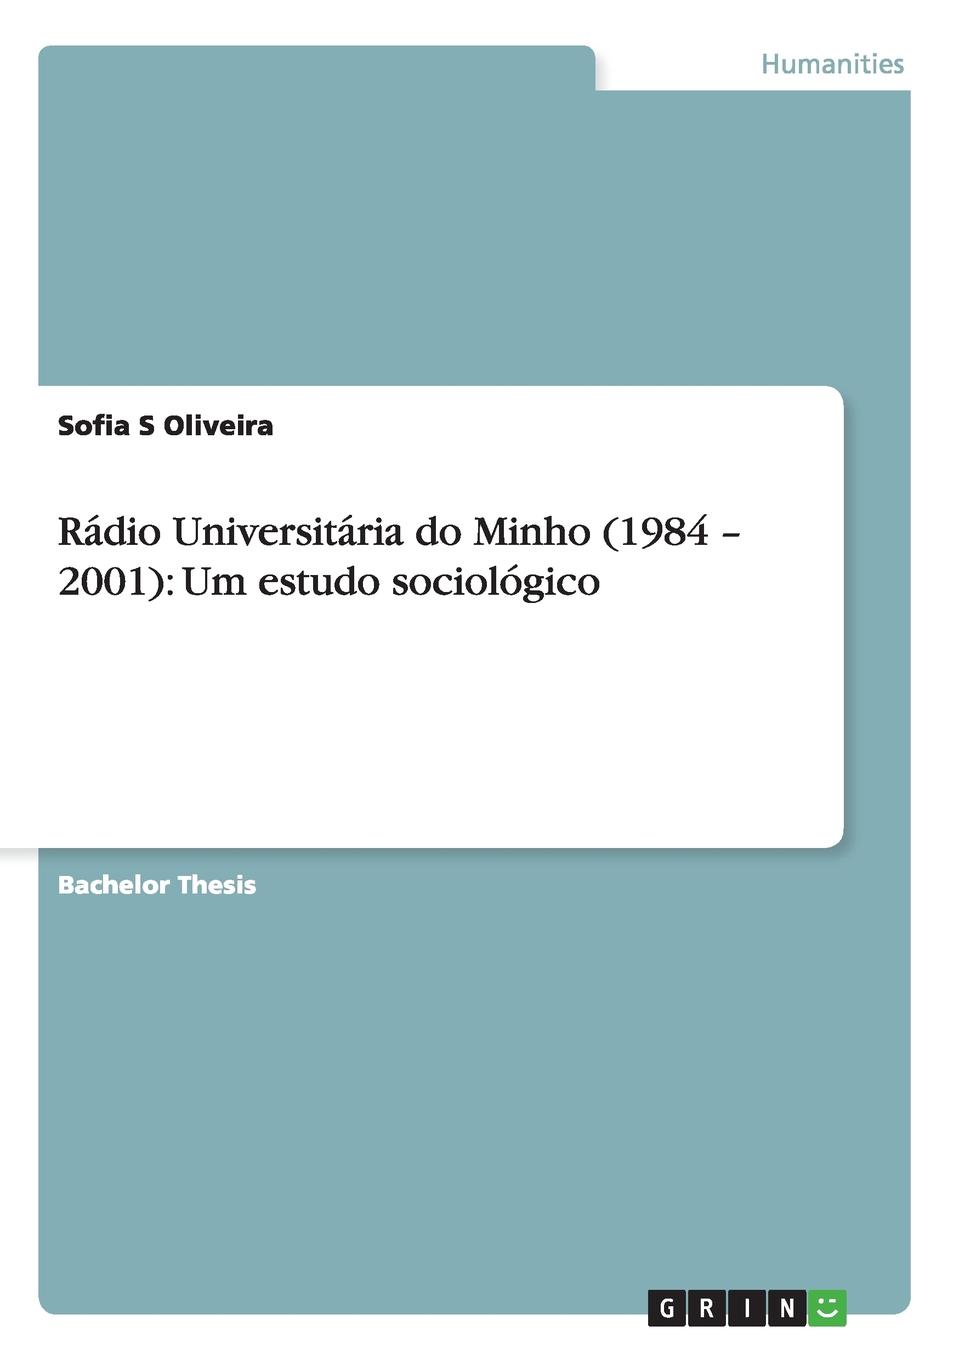 Radio Universitaria do Minho (1984 - 2001). Um estudo sociologico